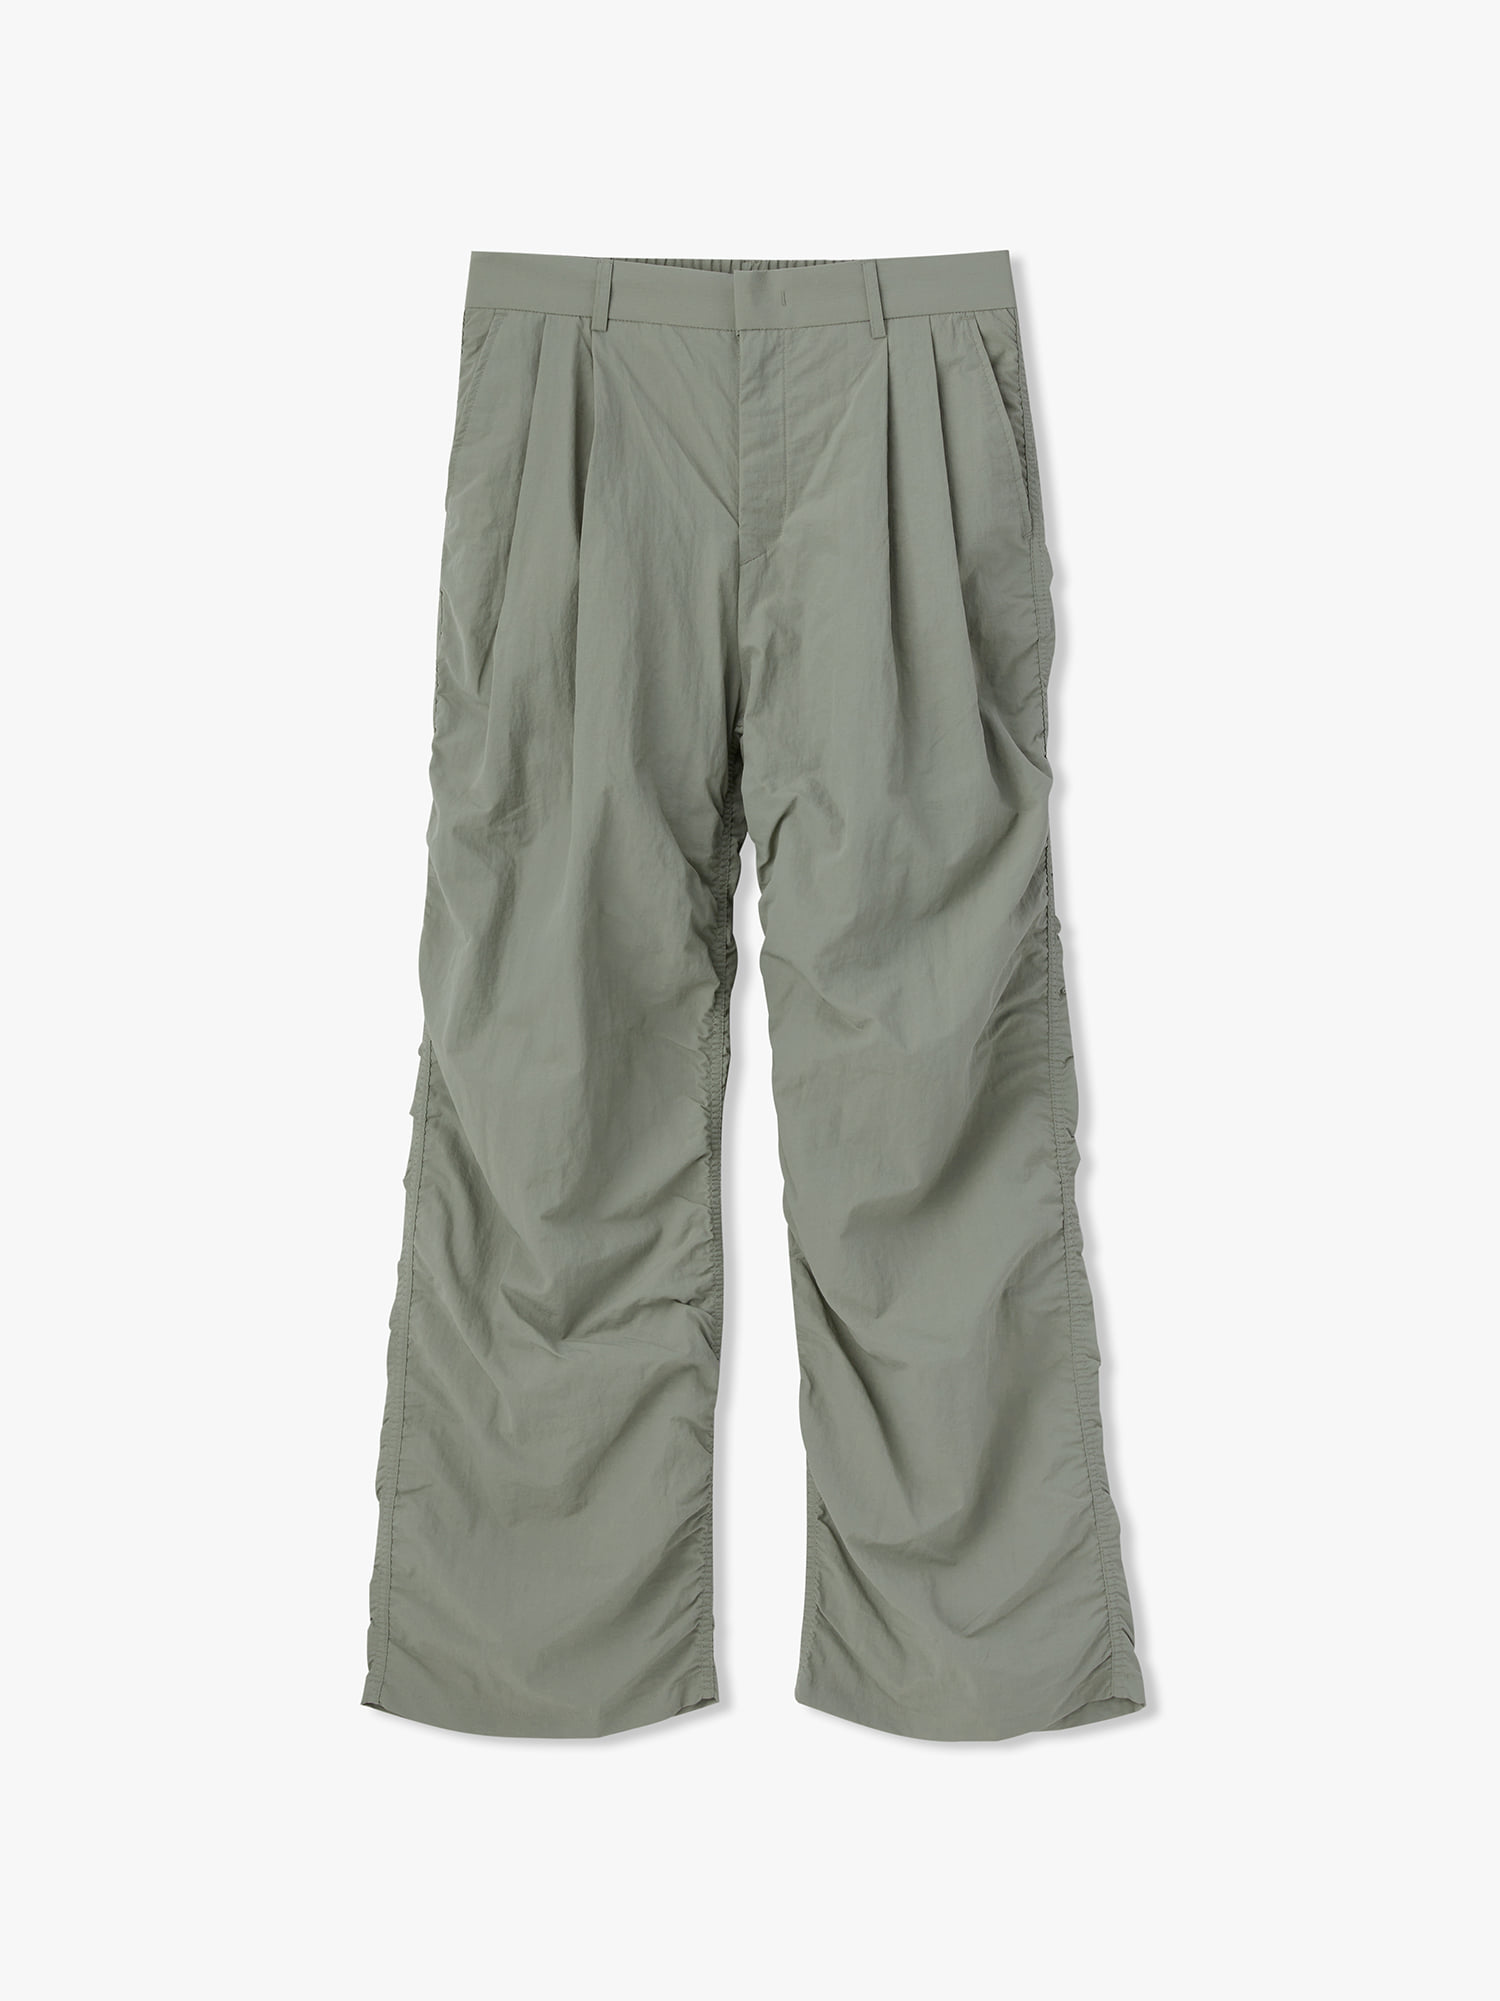 Wind Nylon Shirring Pants (Light Khaki)